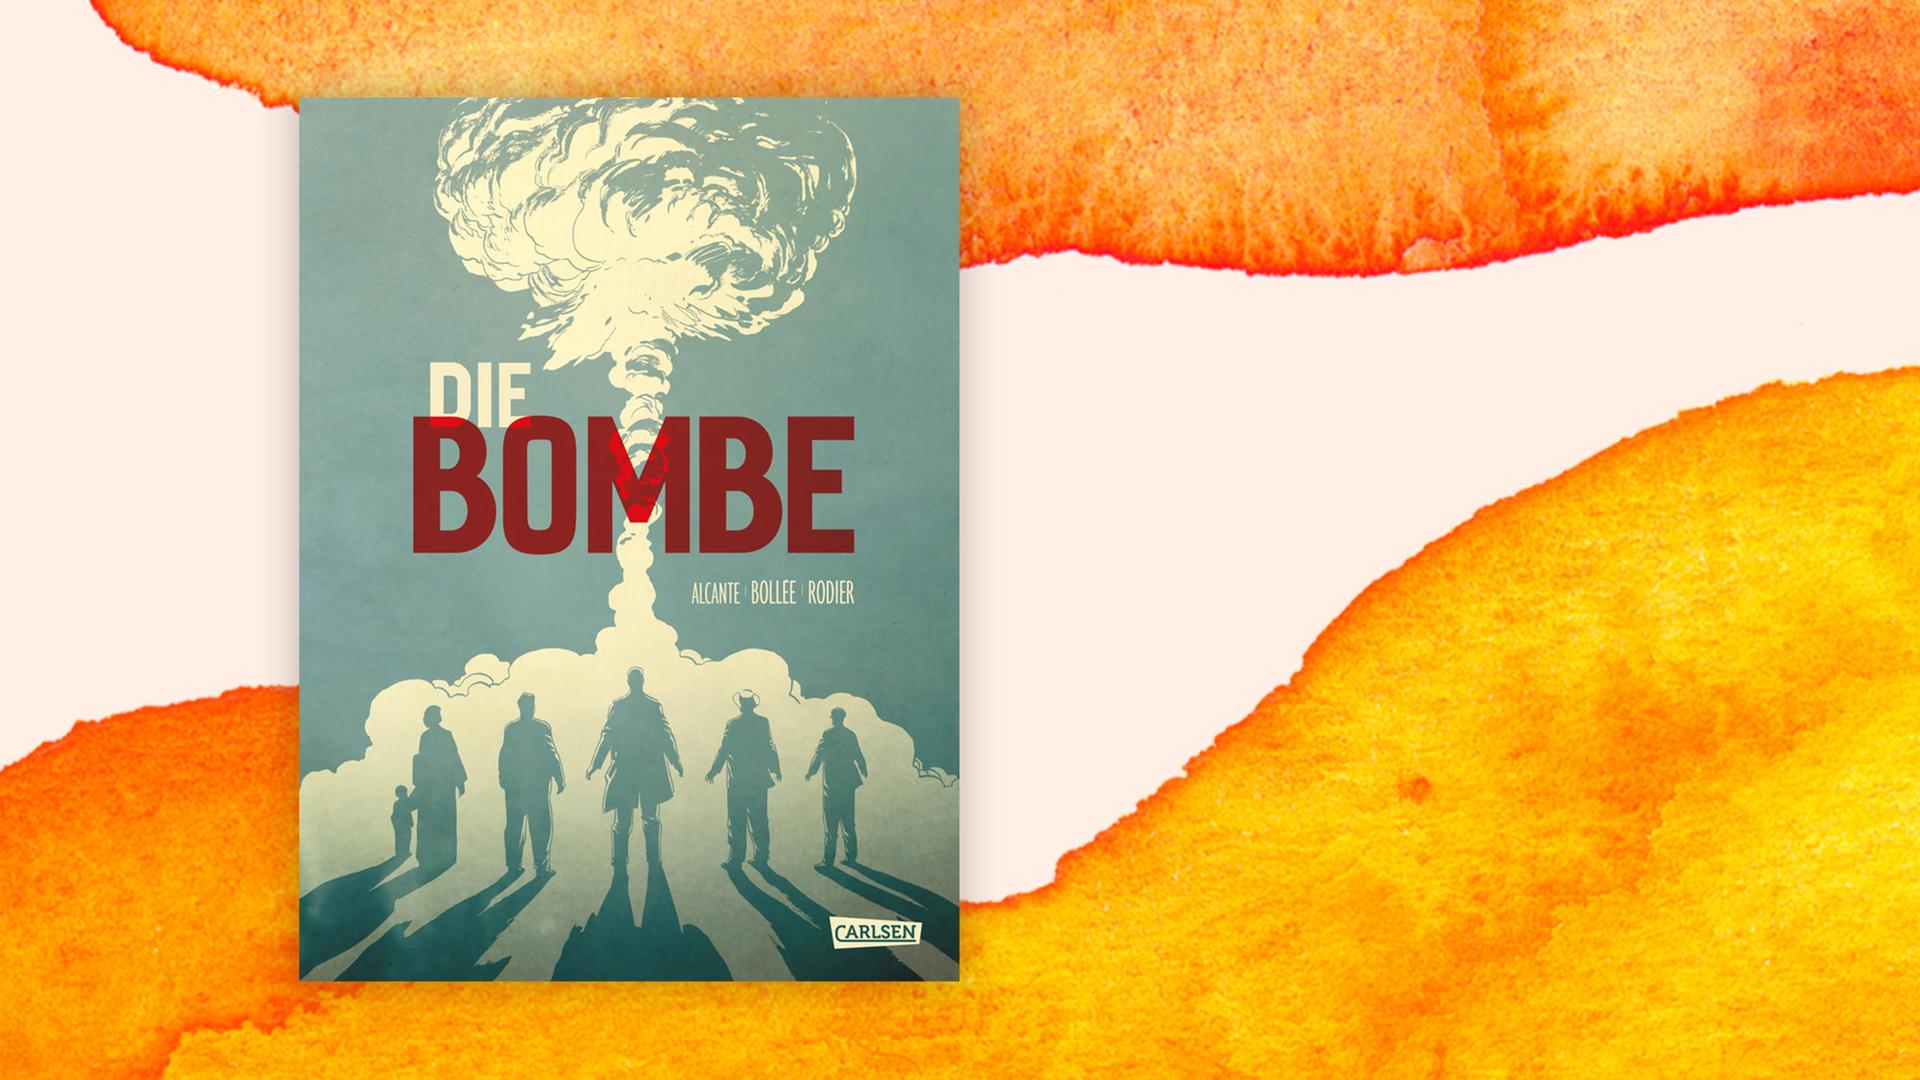 Buchcover zu "Die Bombe" zeigt einen Atompilz